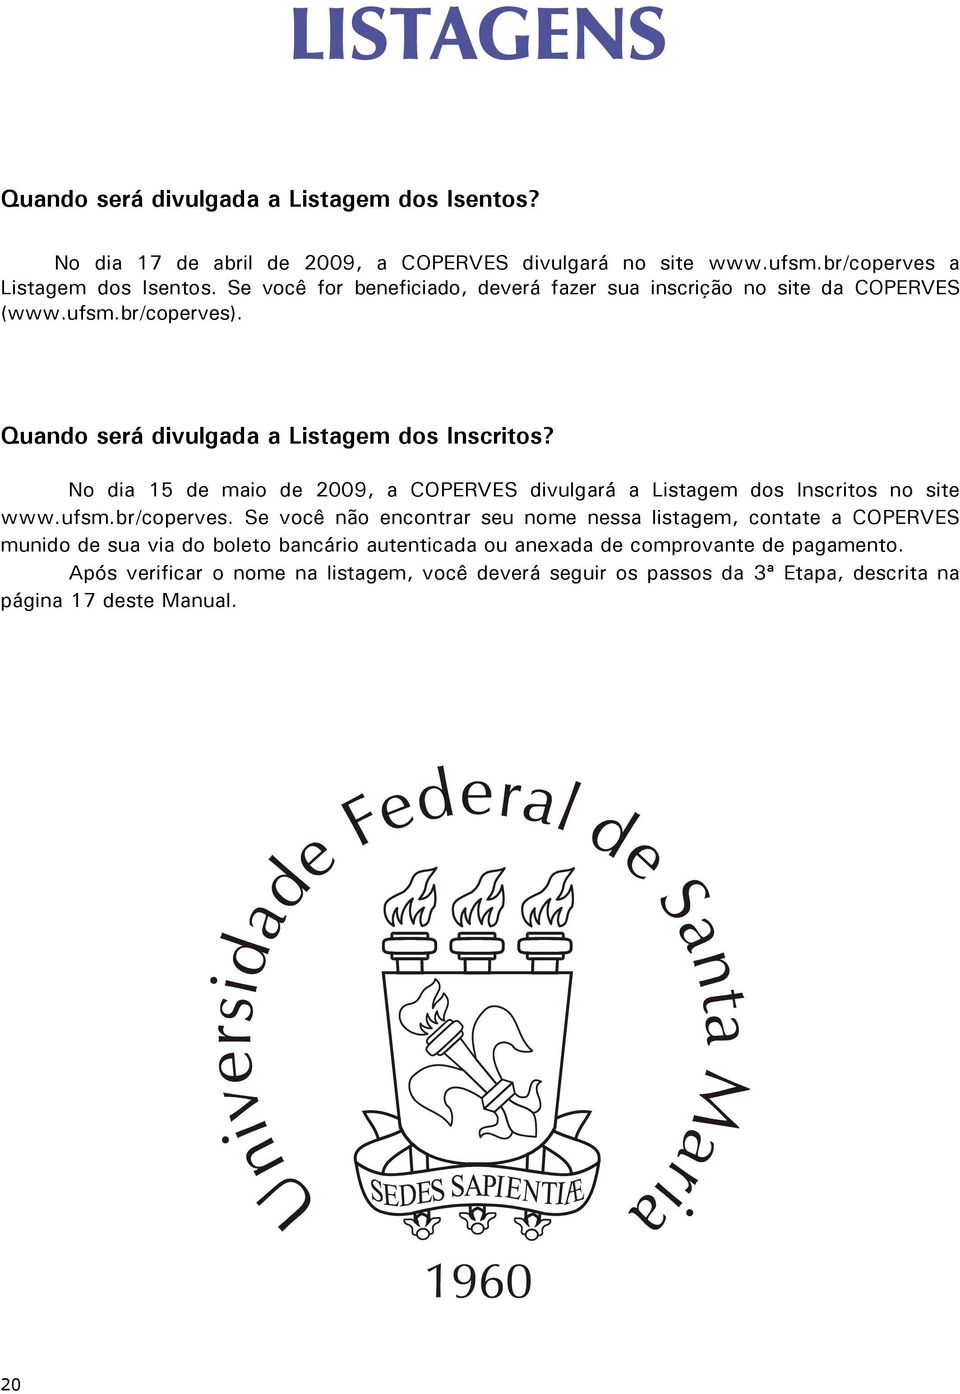 No dia 15 de maio de 2009, a COPERVES divulgará a Listagem dos Inscritos no site www.ufsm.br/coperves.